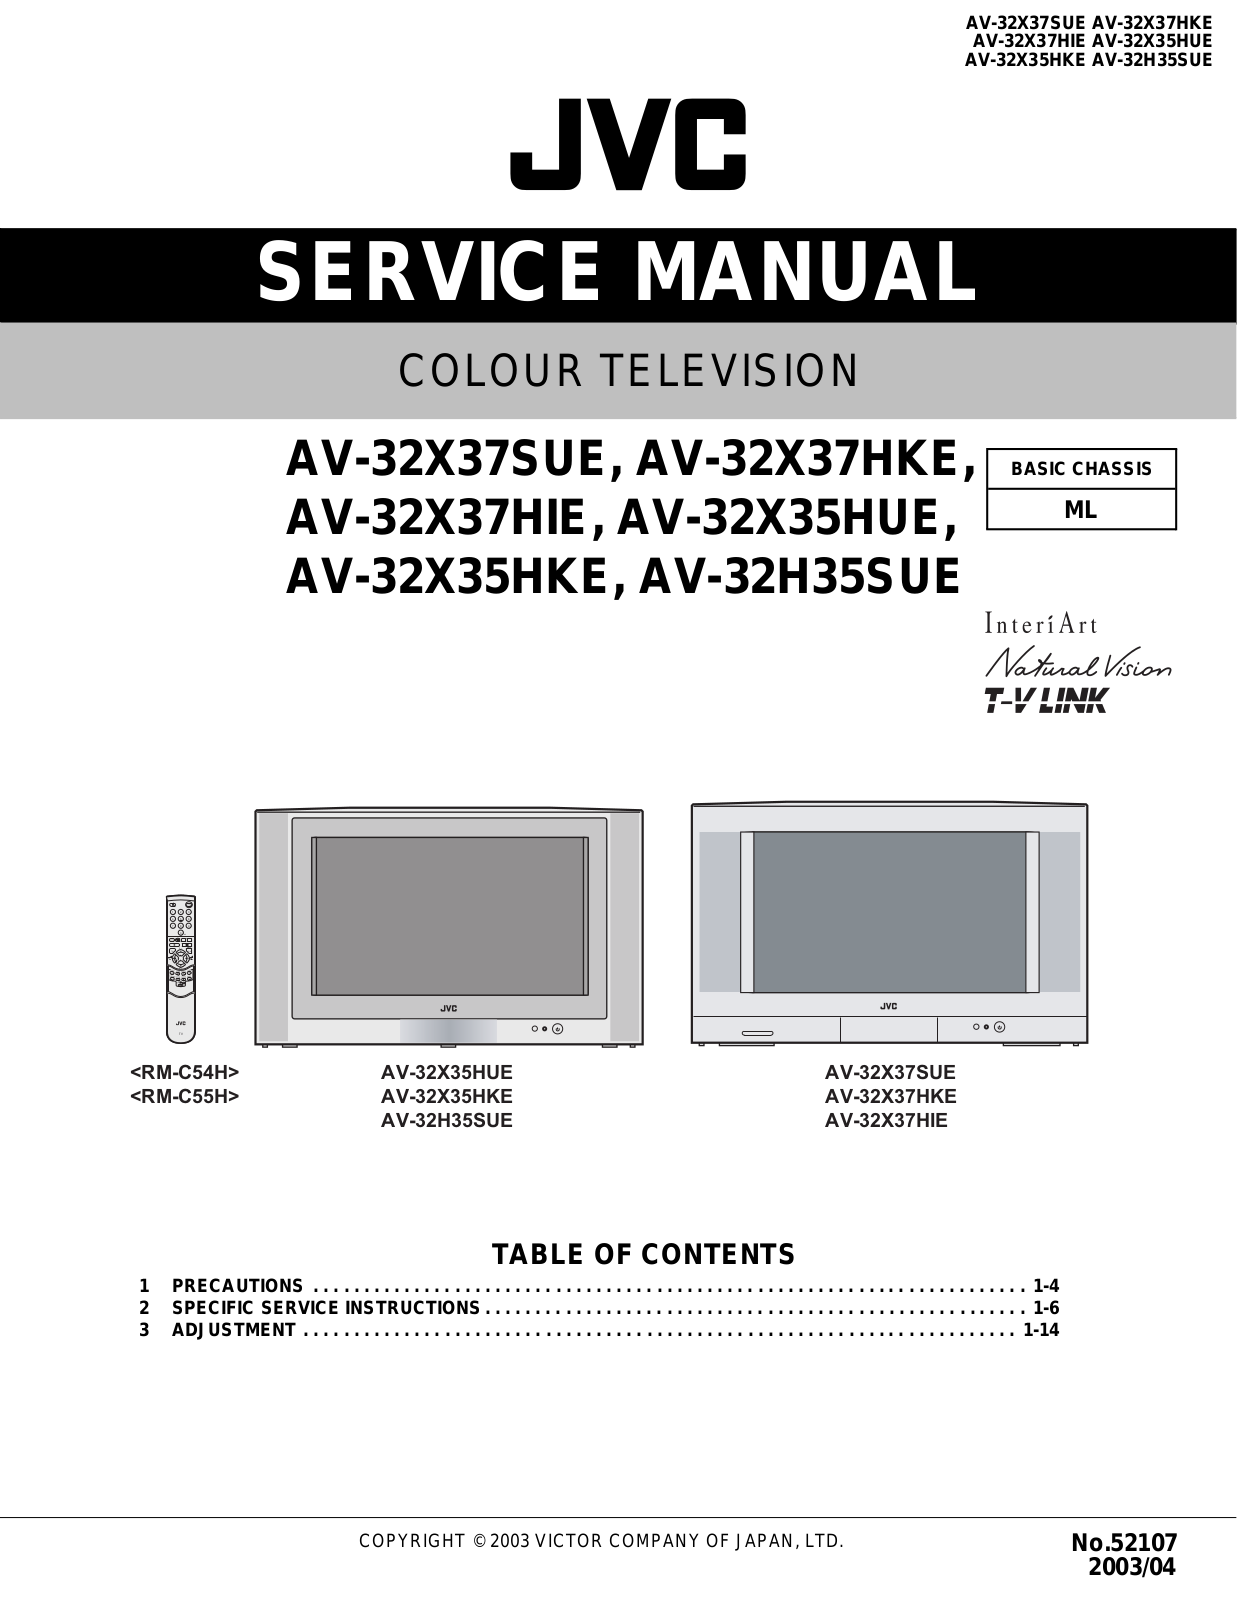 Jvc AV-32X35HUE, AV-32X37HKE, AV-32X35HKE, AV-32H35SUE, AV-32X37SUE User Manual